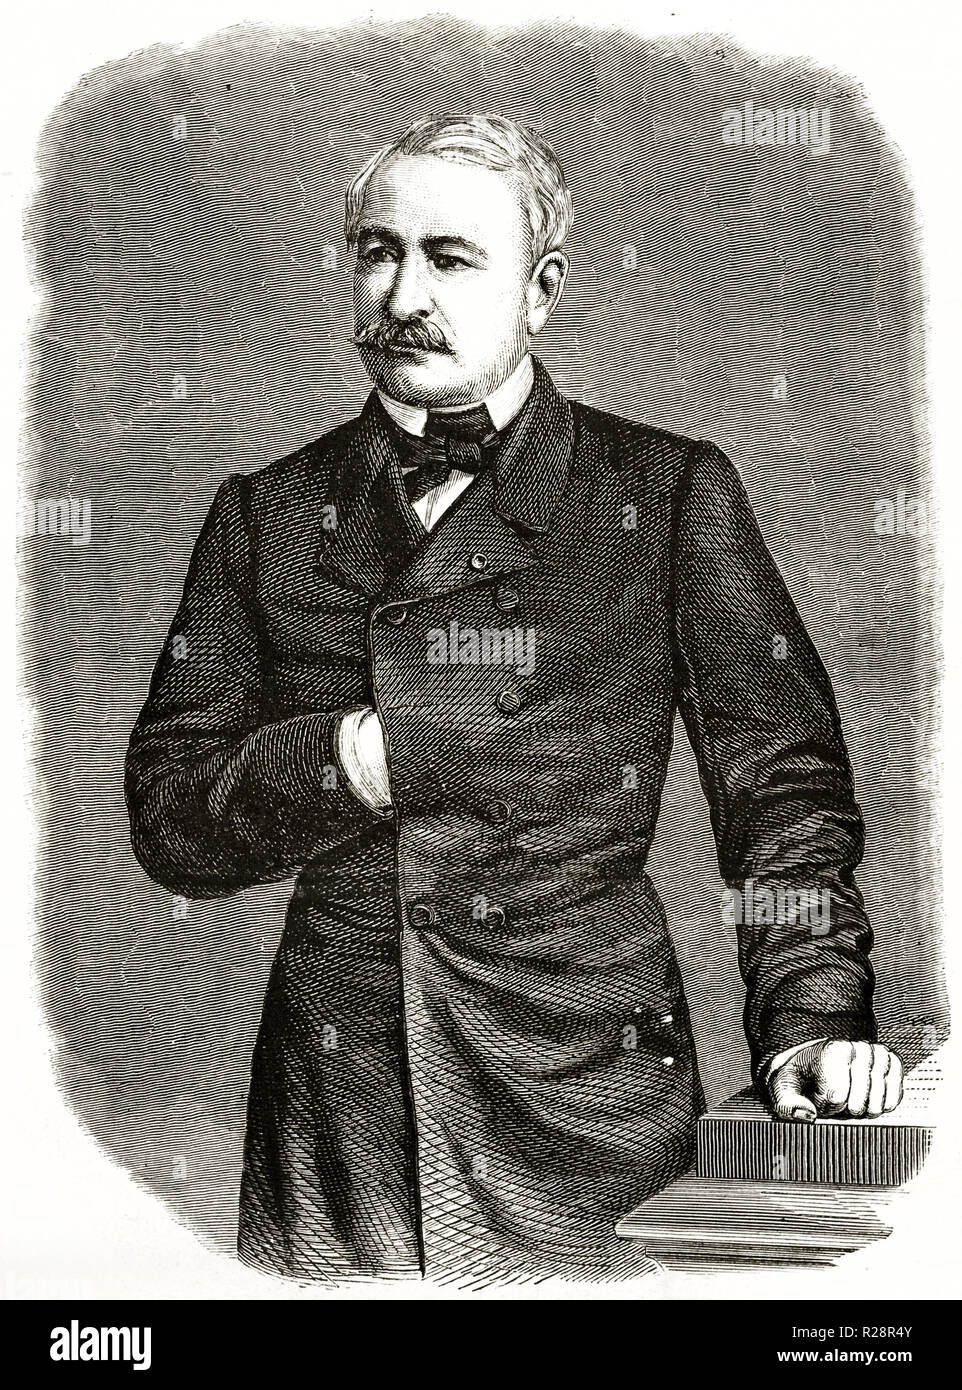 Vecchio ritratto di Ferdinando de Lesseps (1805 - 1894), diplomatico francese e sviluppatore del Canale di Suez. Da Rousseau, publ. in Le Tour du Monde, Parigi, Foto Stock